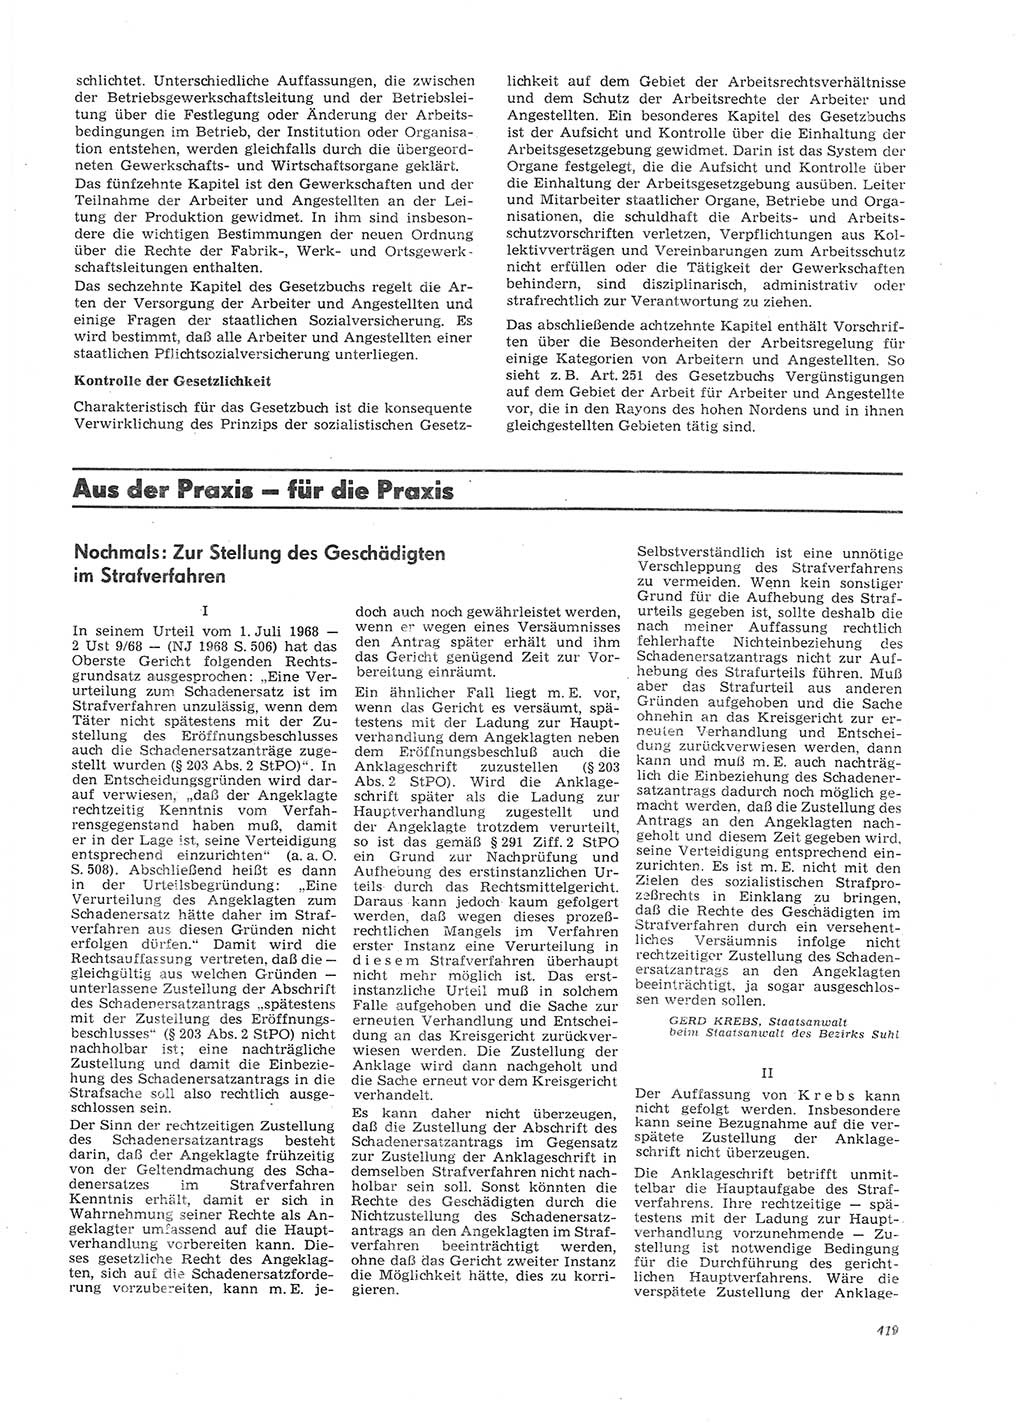 Neue Justiz (NJ), Zeitschrift für Recht und Rechtswissenschaft [Deutsche Demokratische Republik (DDR)], 26. Jahrgang 1972, Seite 419 (NJ DDR 1972, S. 419)